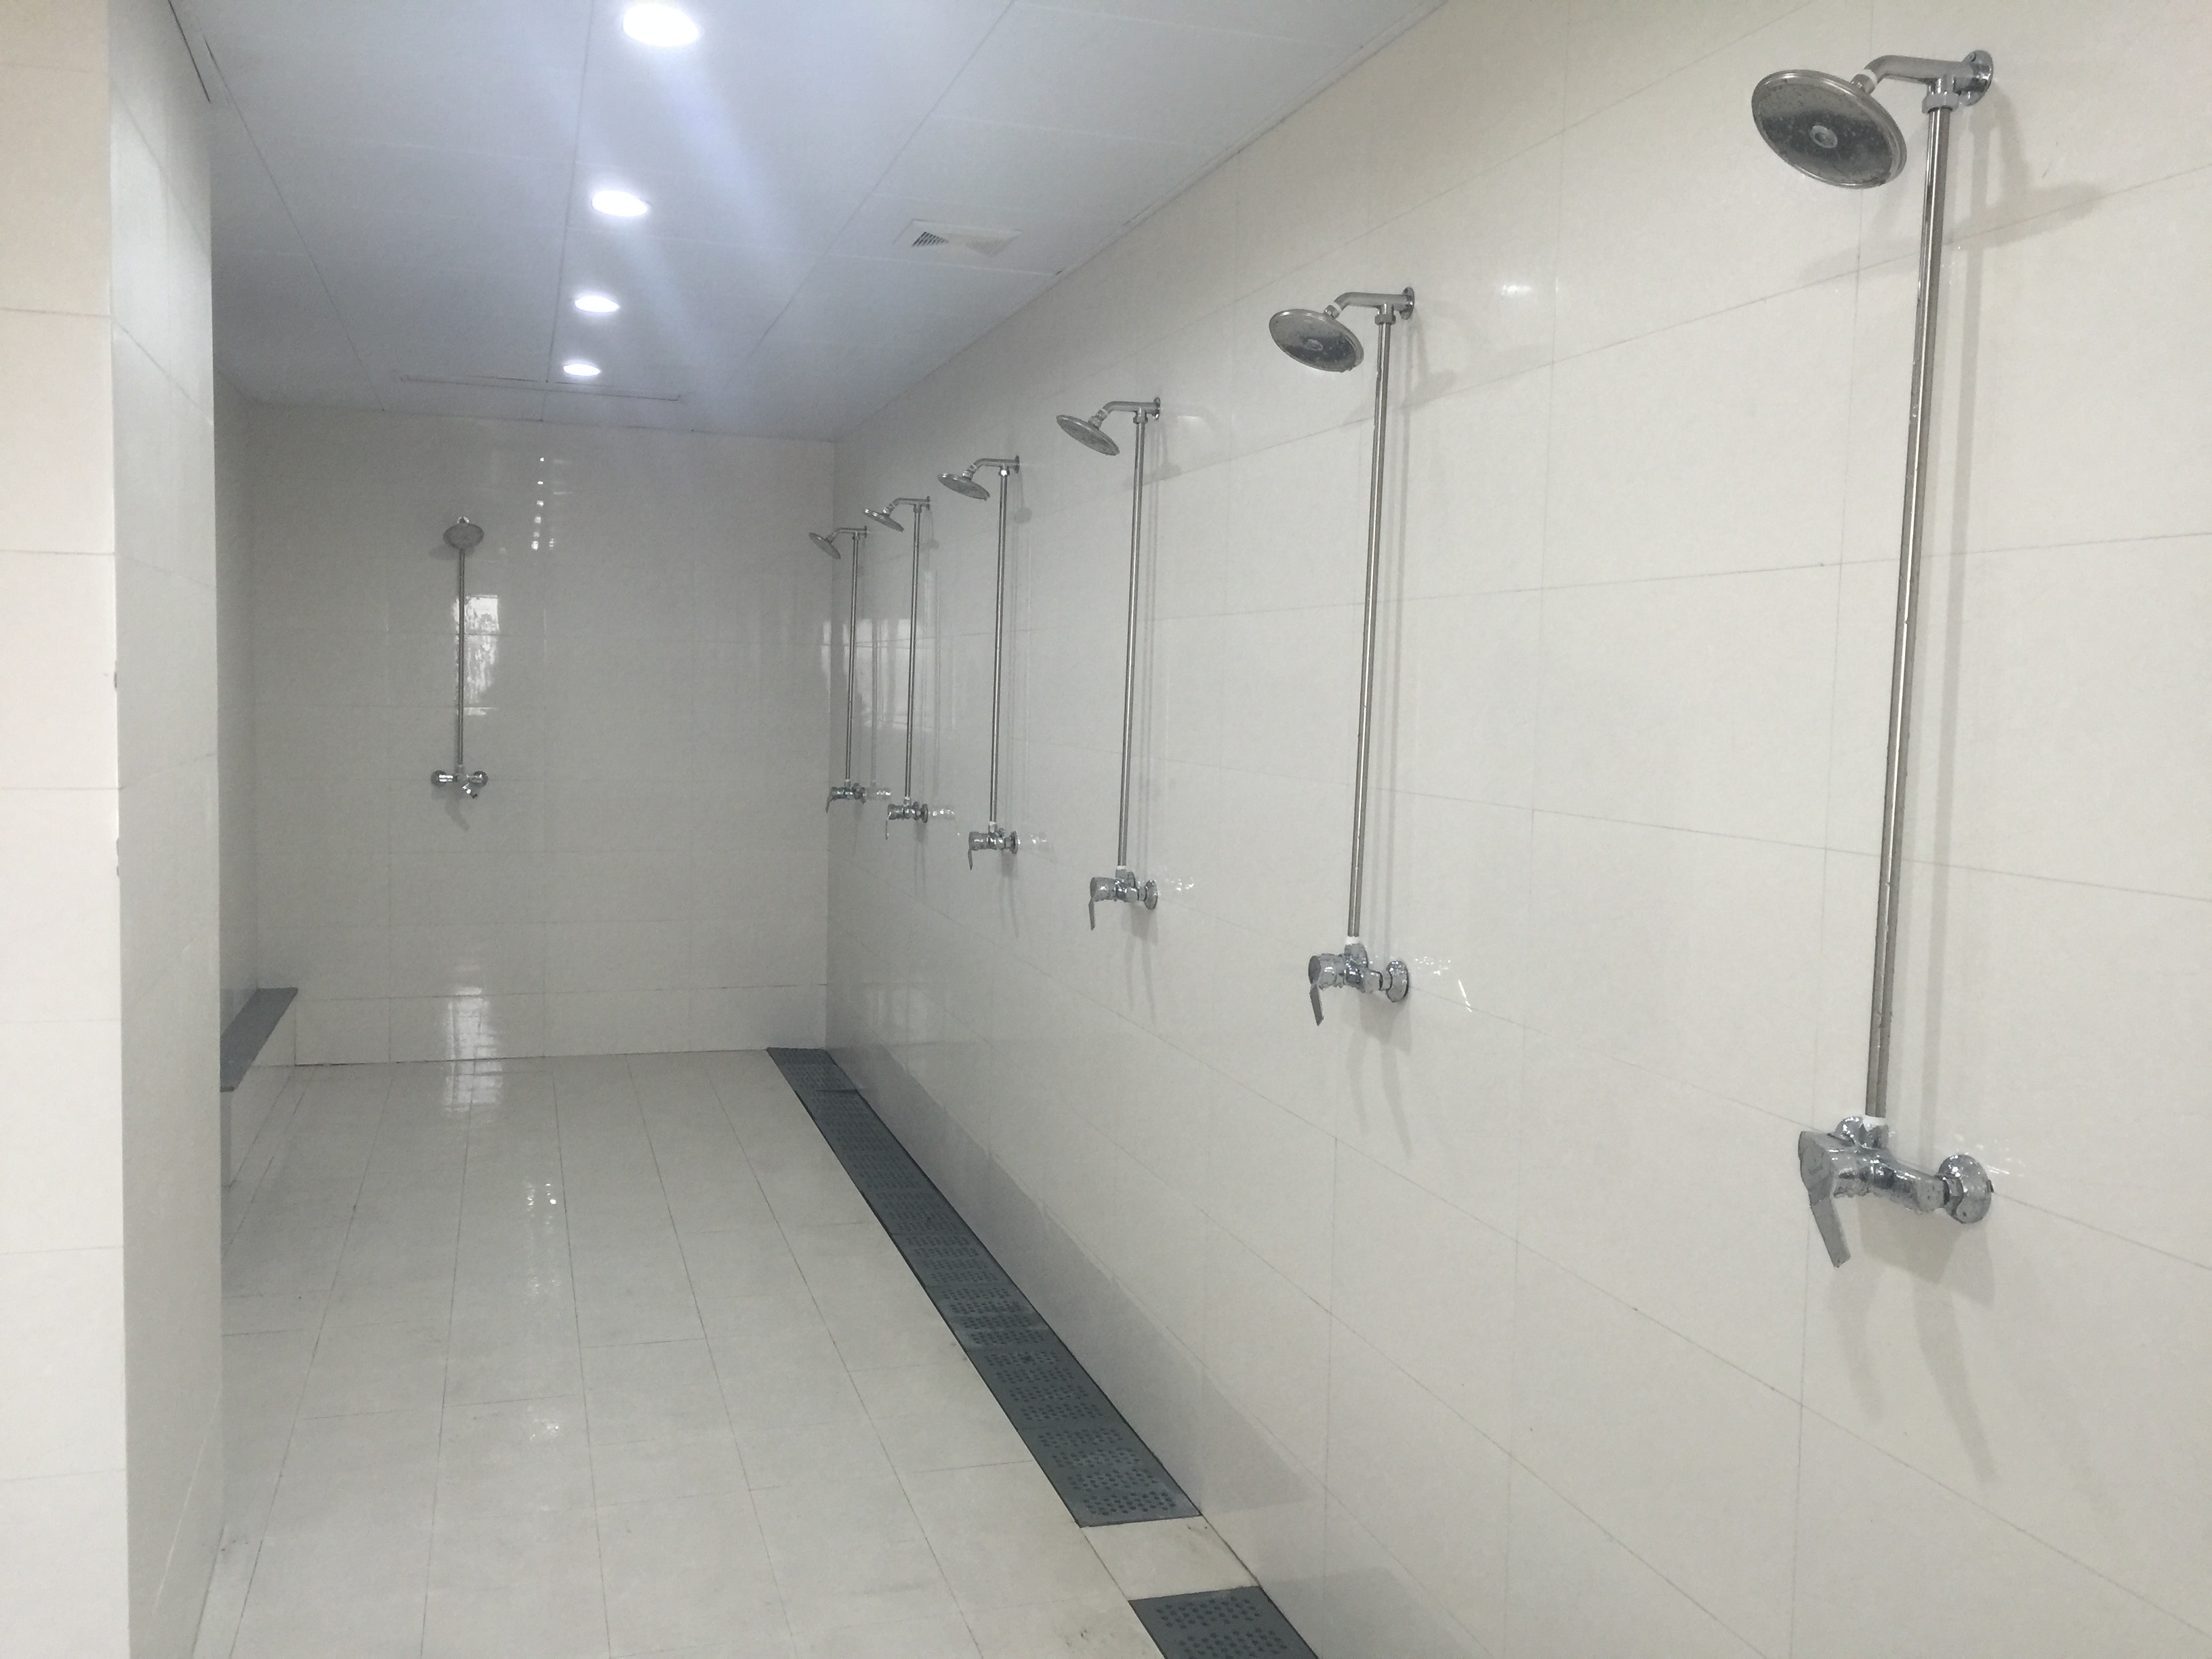 韩国大众公共淋浴间图片